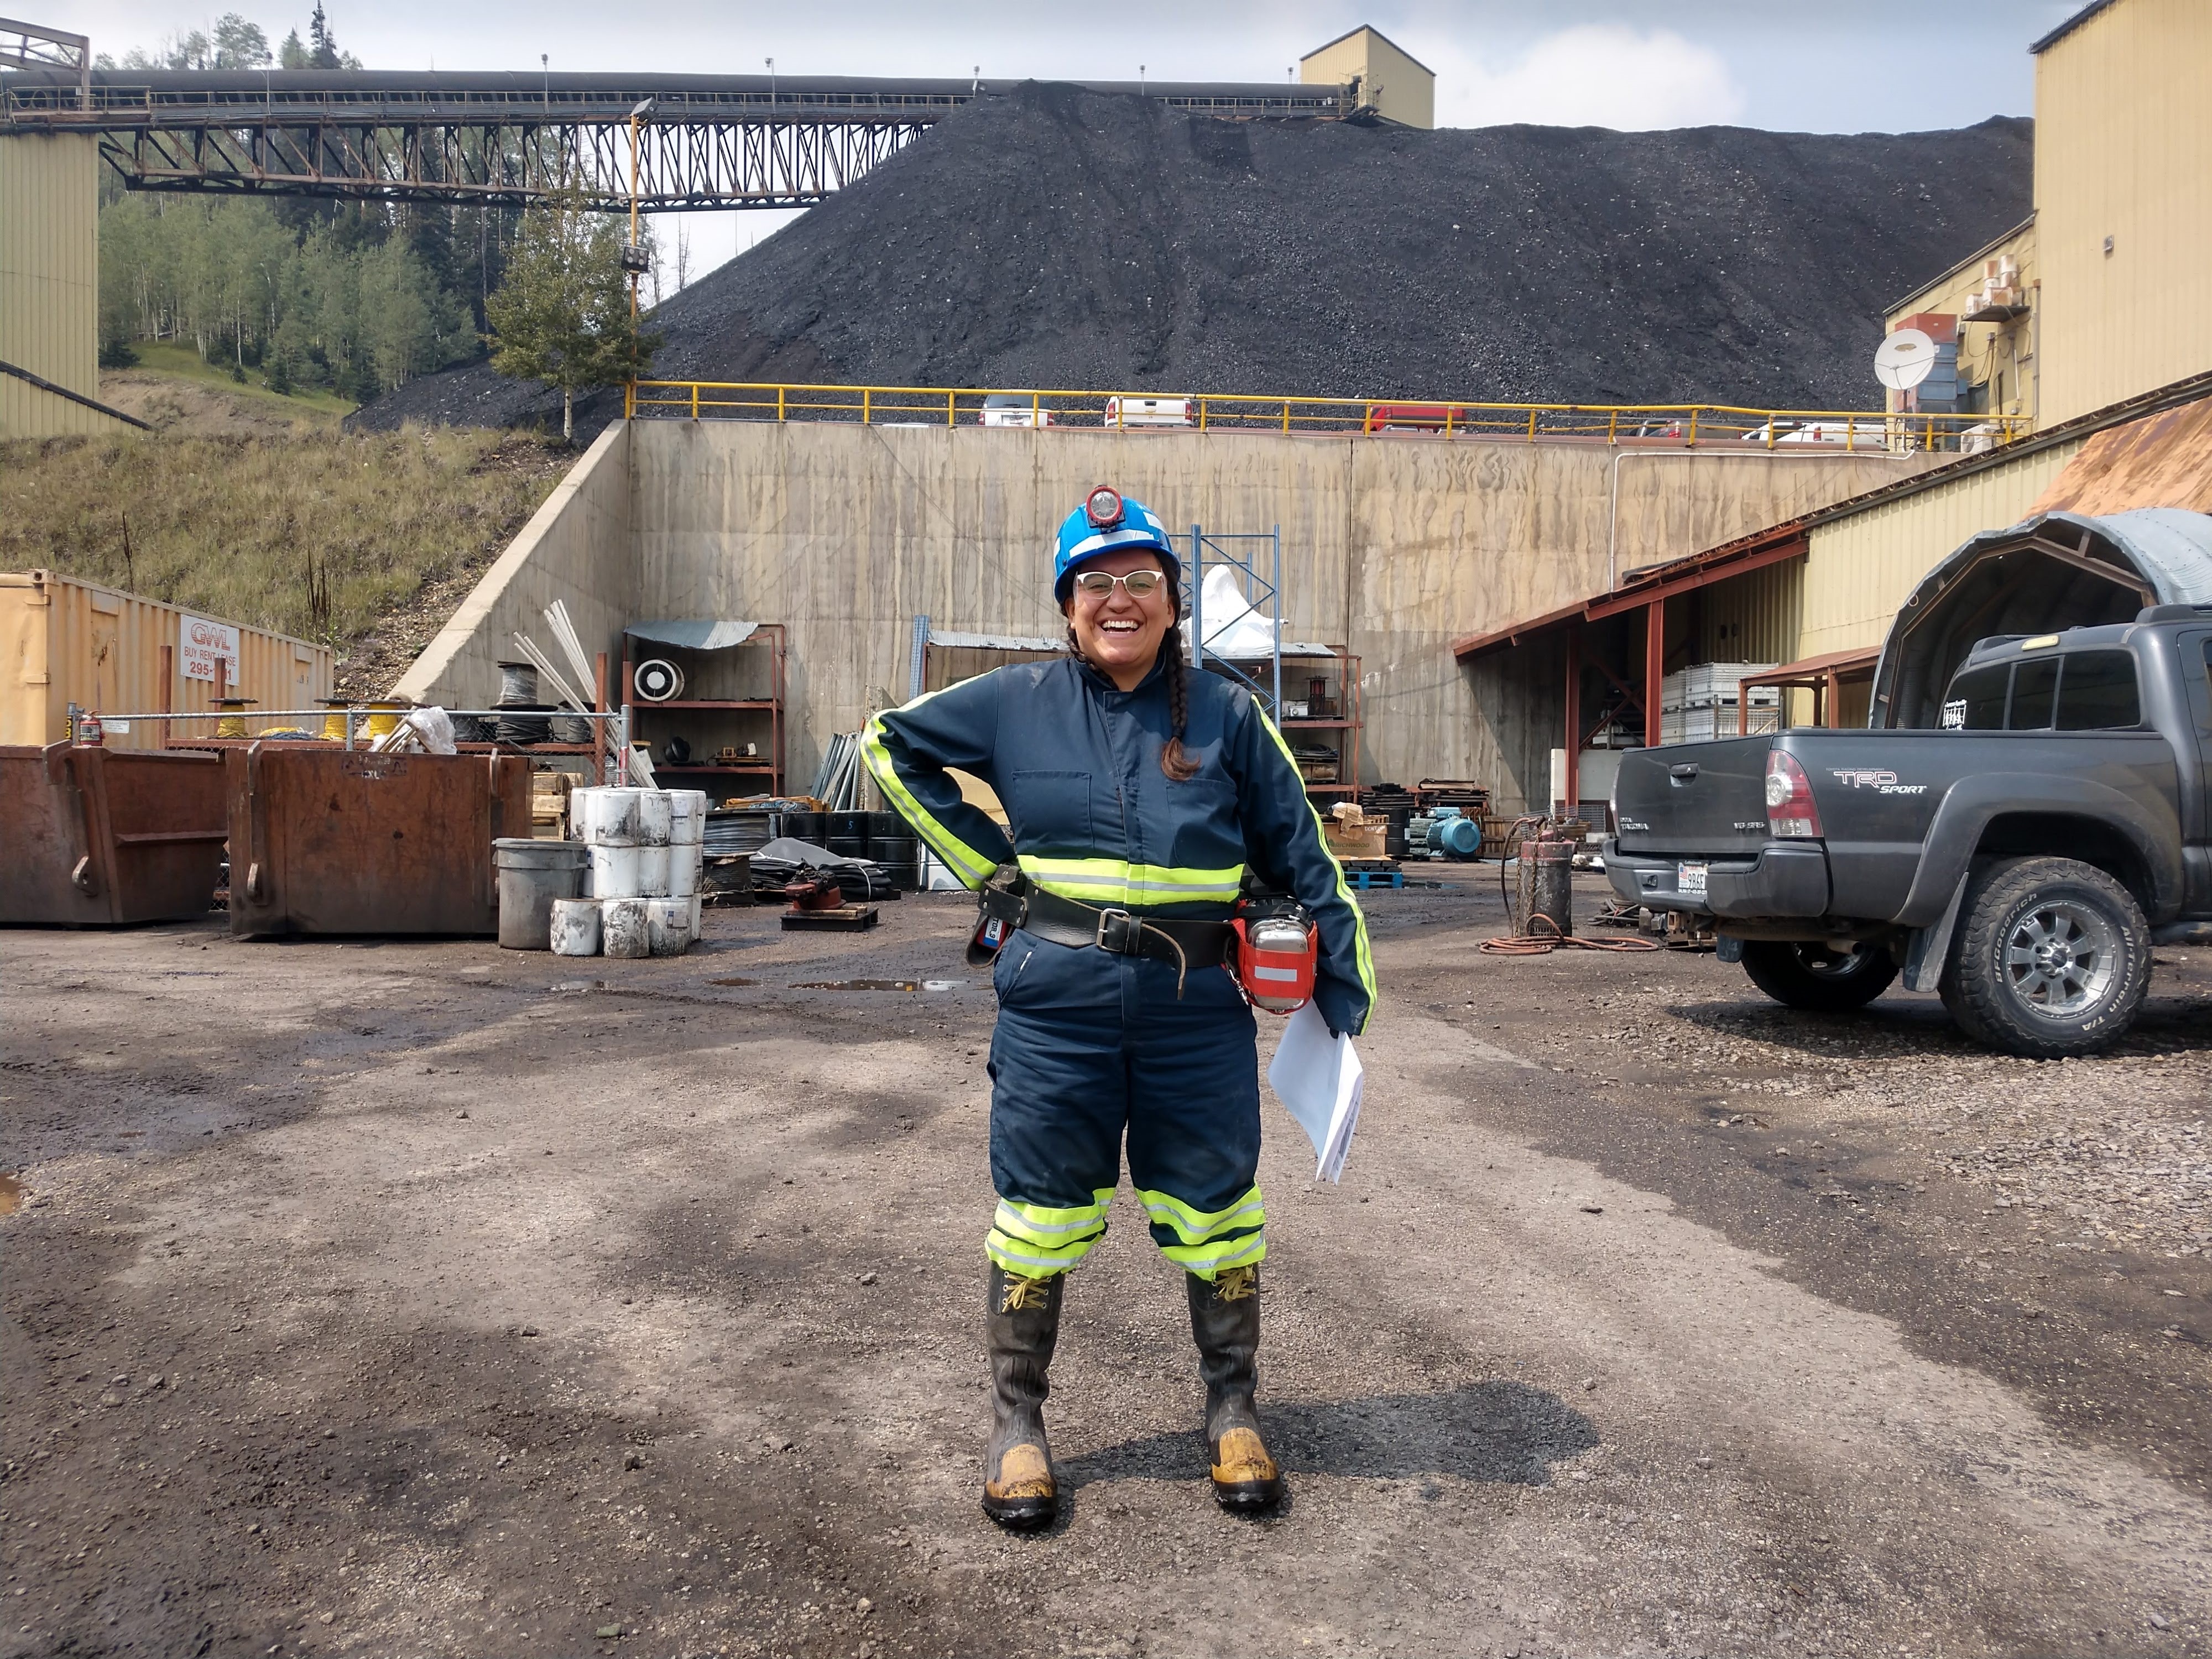 Bobbi Martinez Hernandez in field attire stands at a coal mine site.